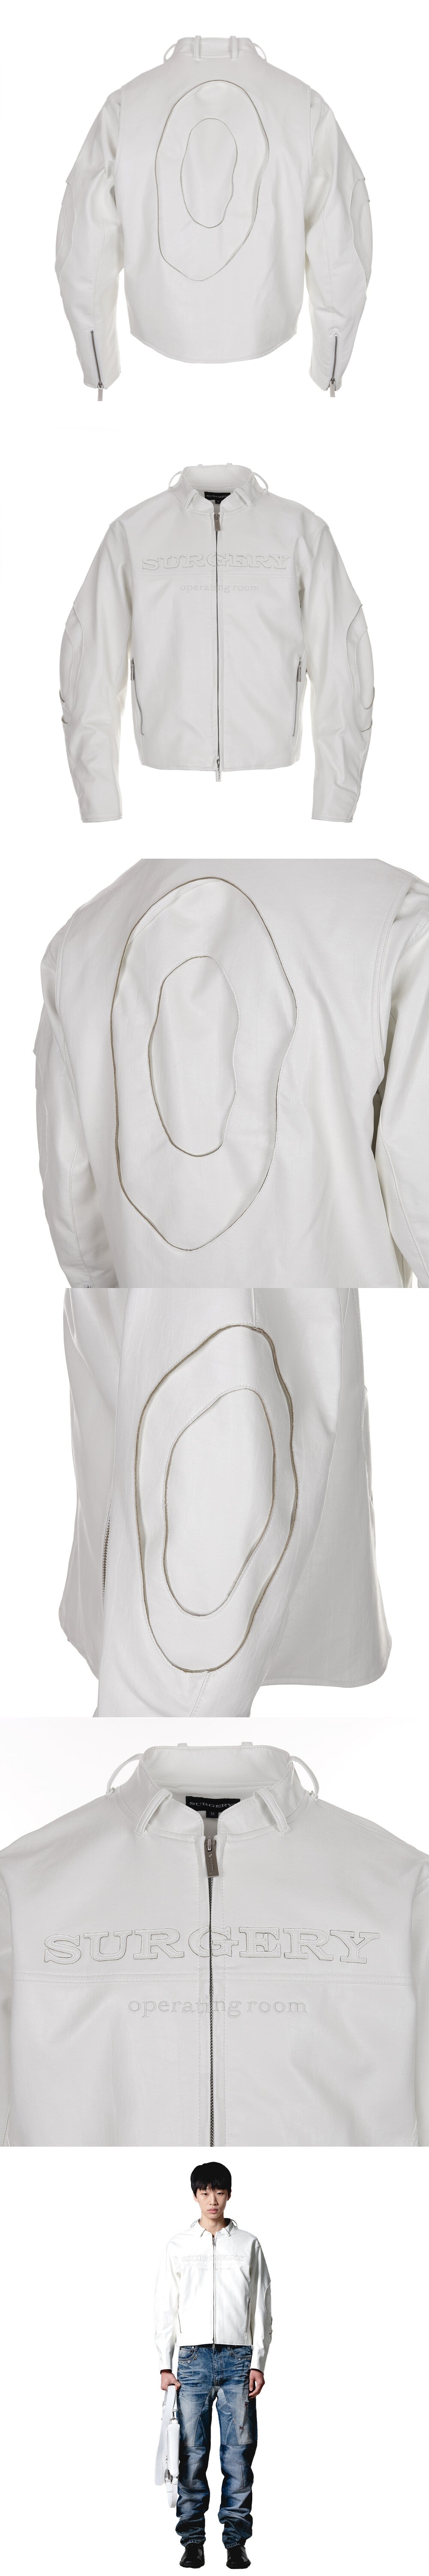 surgery stratum leather jacket 'white'